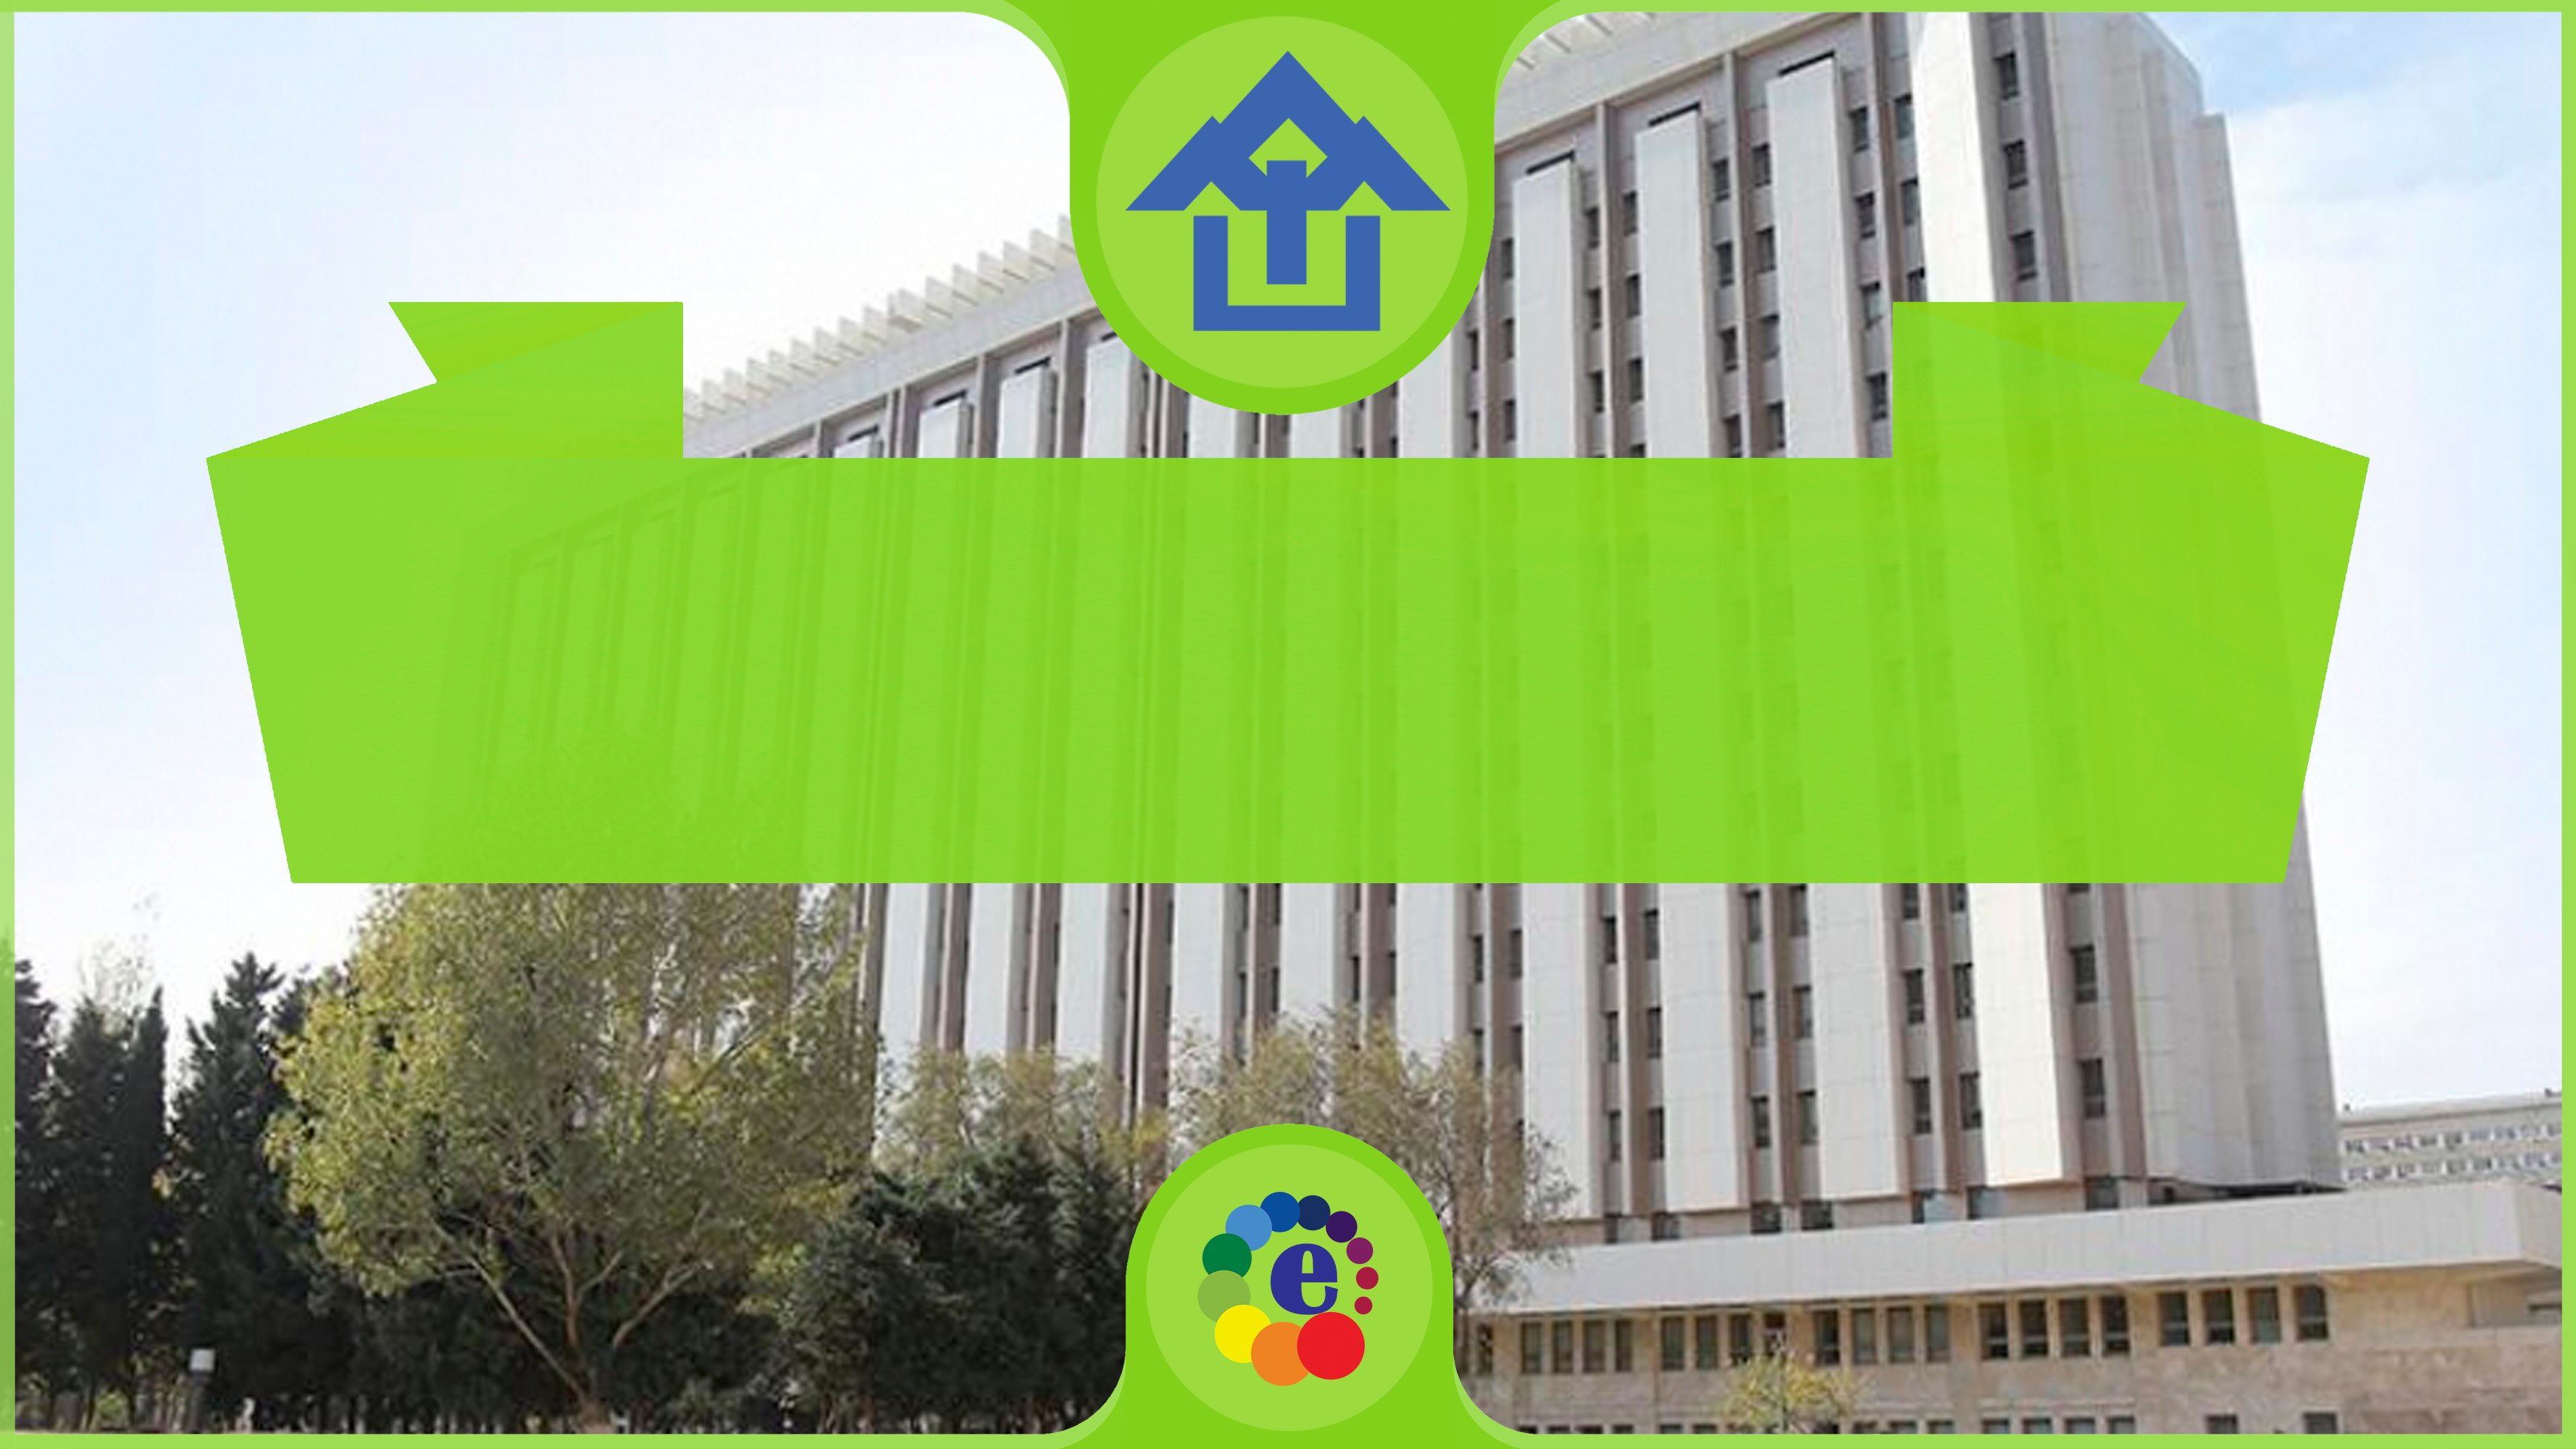 Azerbaycan Mimarlık ve İnşaat Üniversitesi